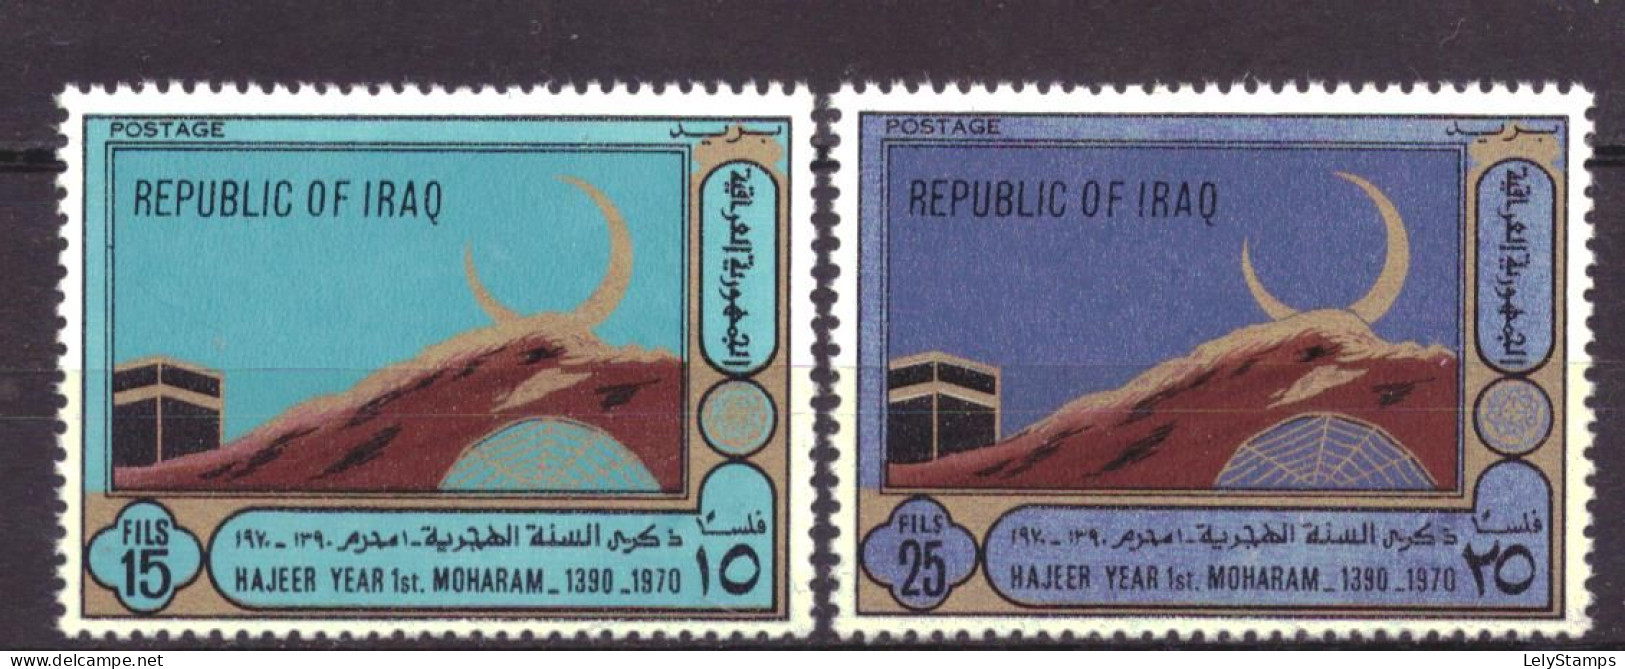 Irak / Iraq 628 & 629 MNH ** Islamic Year 1390 (1970) - Irak